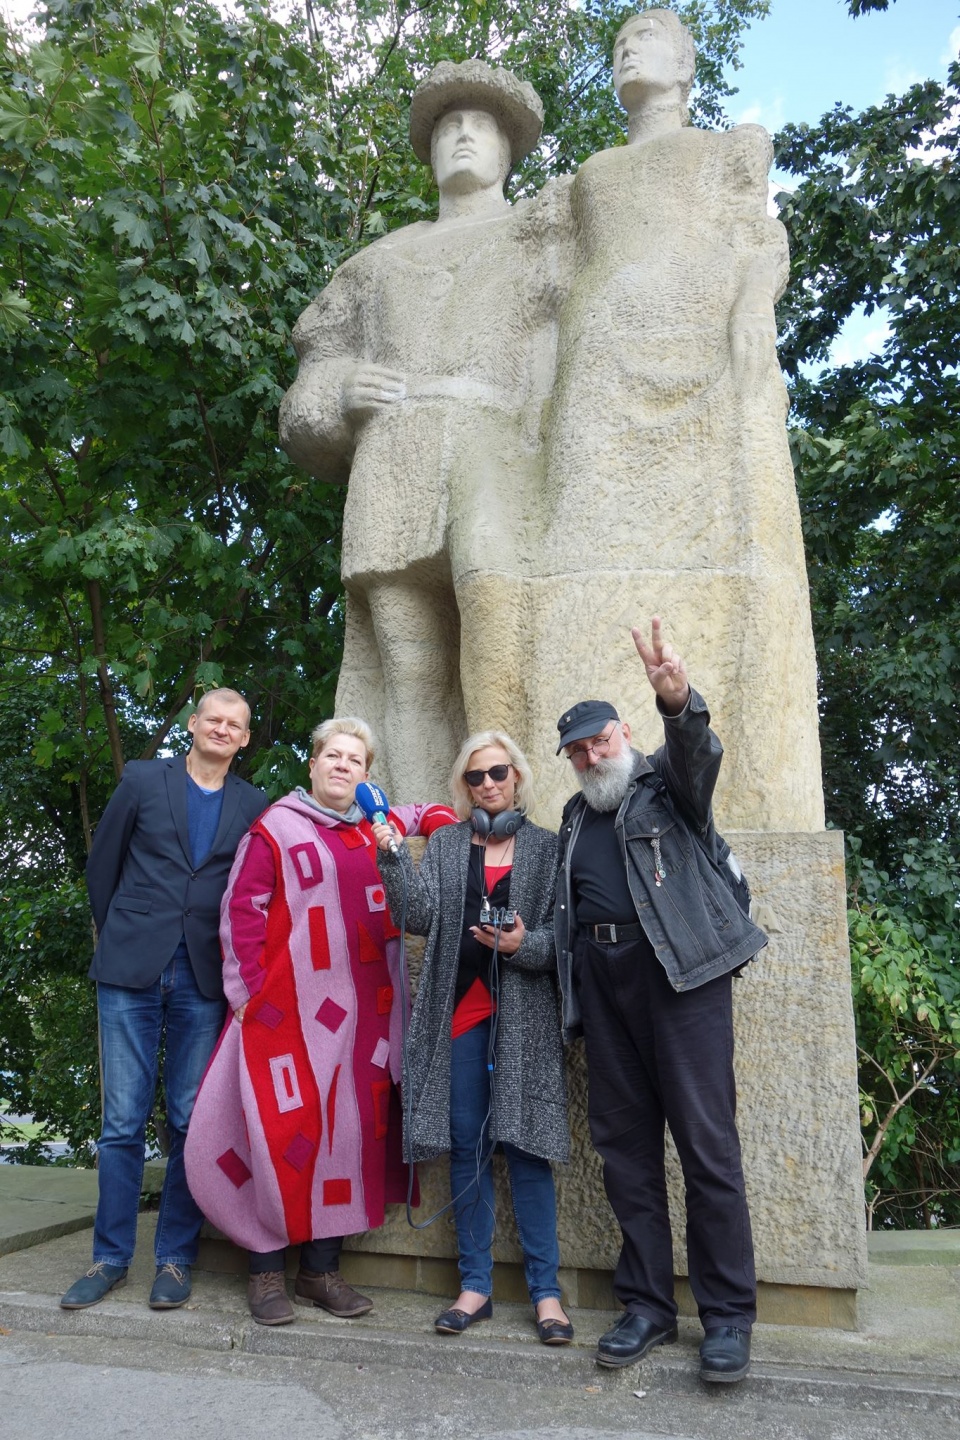 W tym samym miejscu w 2017 roku. Szczecińscy hipisi już nie na pomniku, ale u jego stóp ;-) Od lewej: Wojciech Wiśniewski ("Wiśnia", "Wisznu"), Inga Kurek-Baranowska (kiedyś "Jaga"), autorka i Krzysztof Żurawski ("Kiniu").